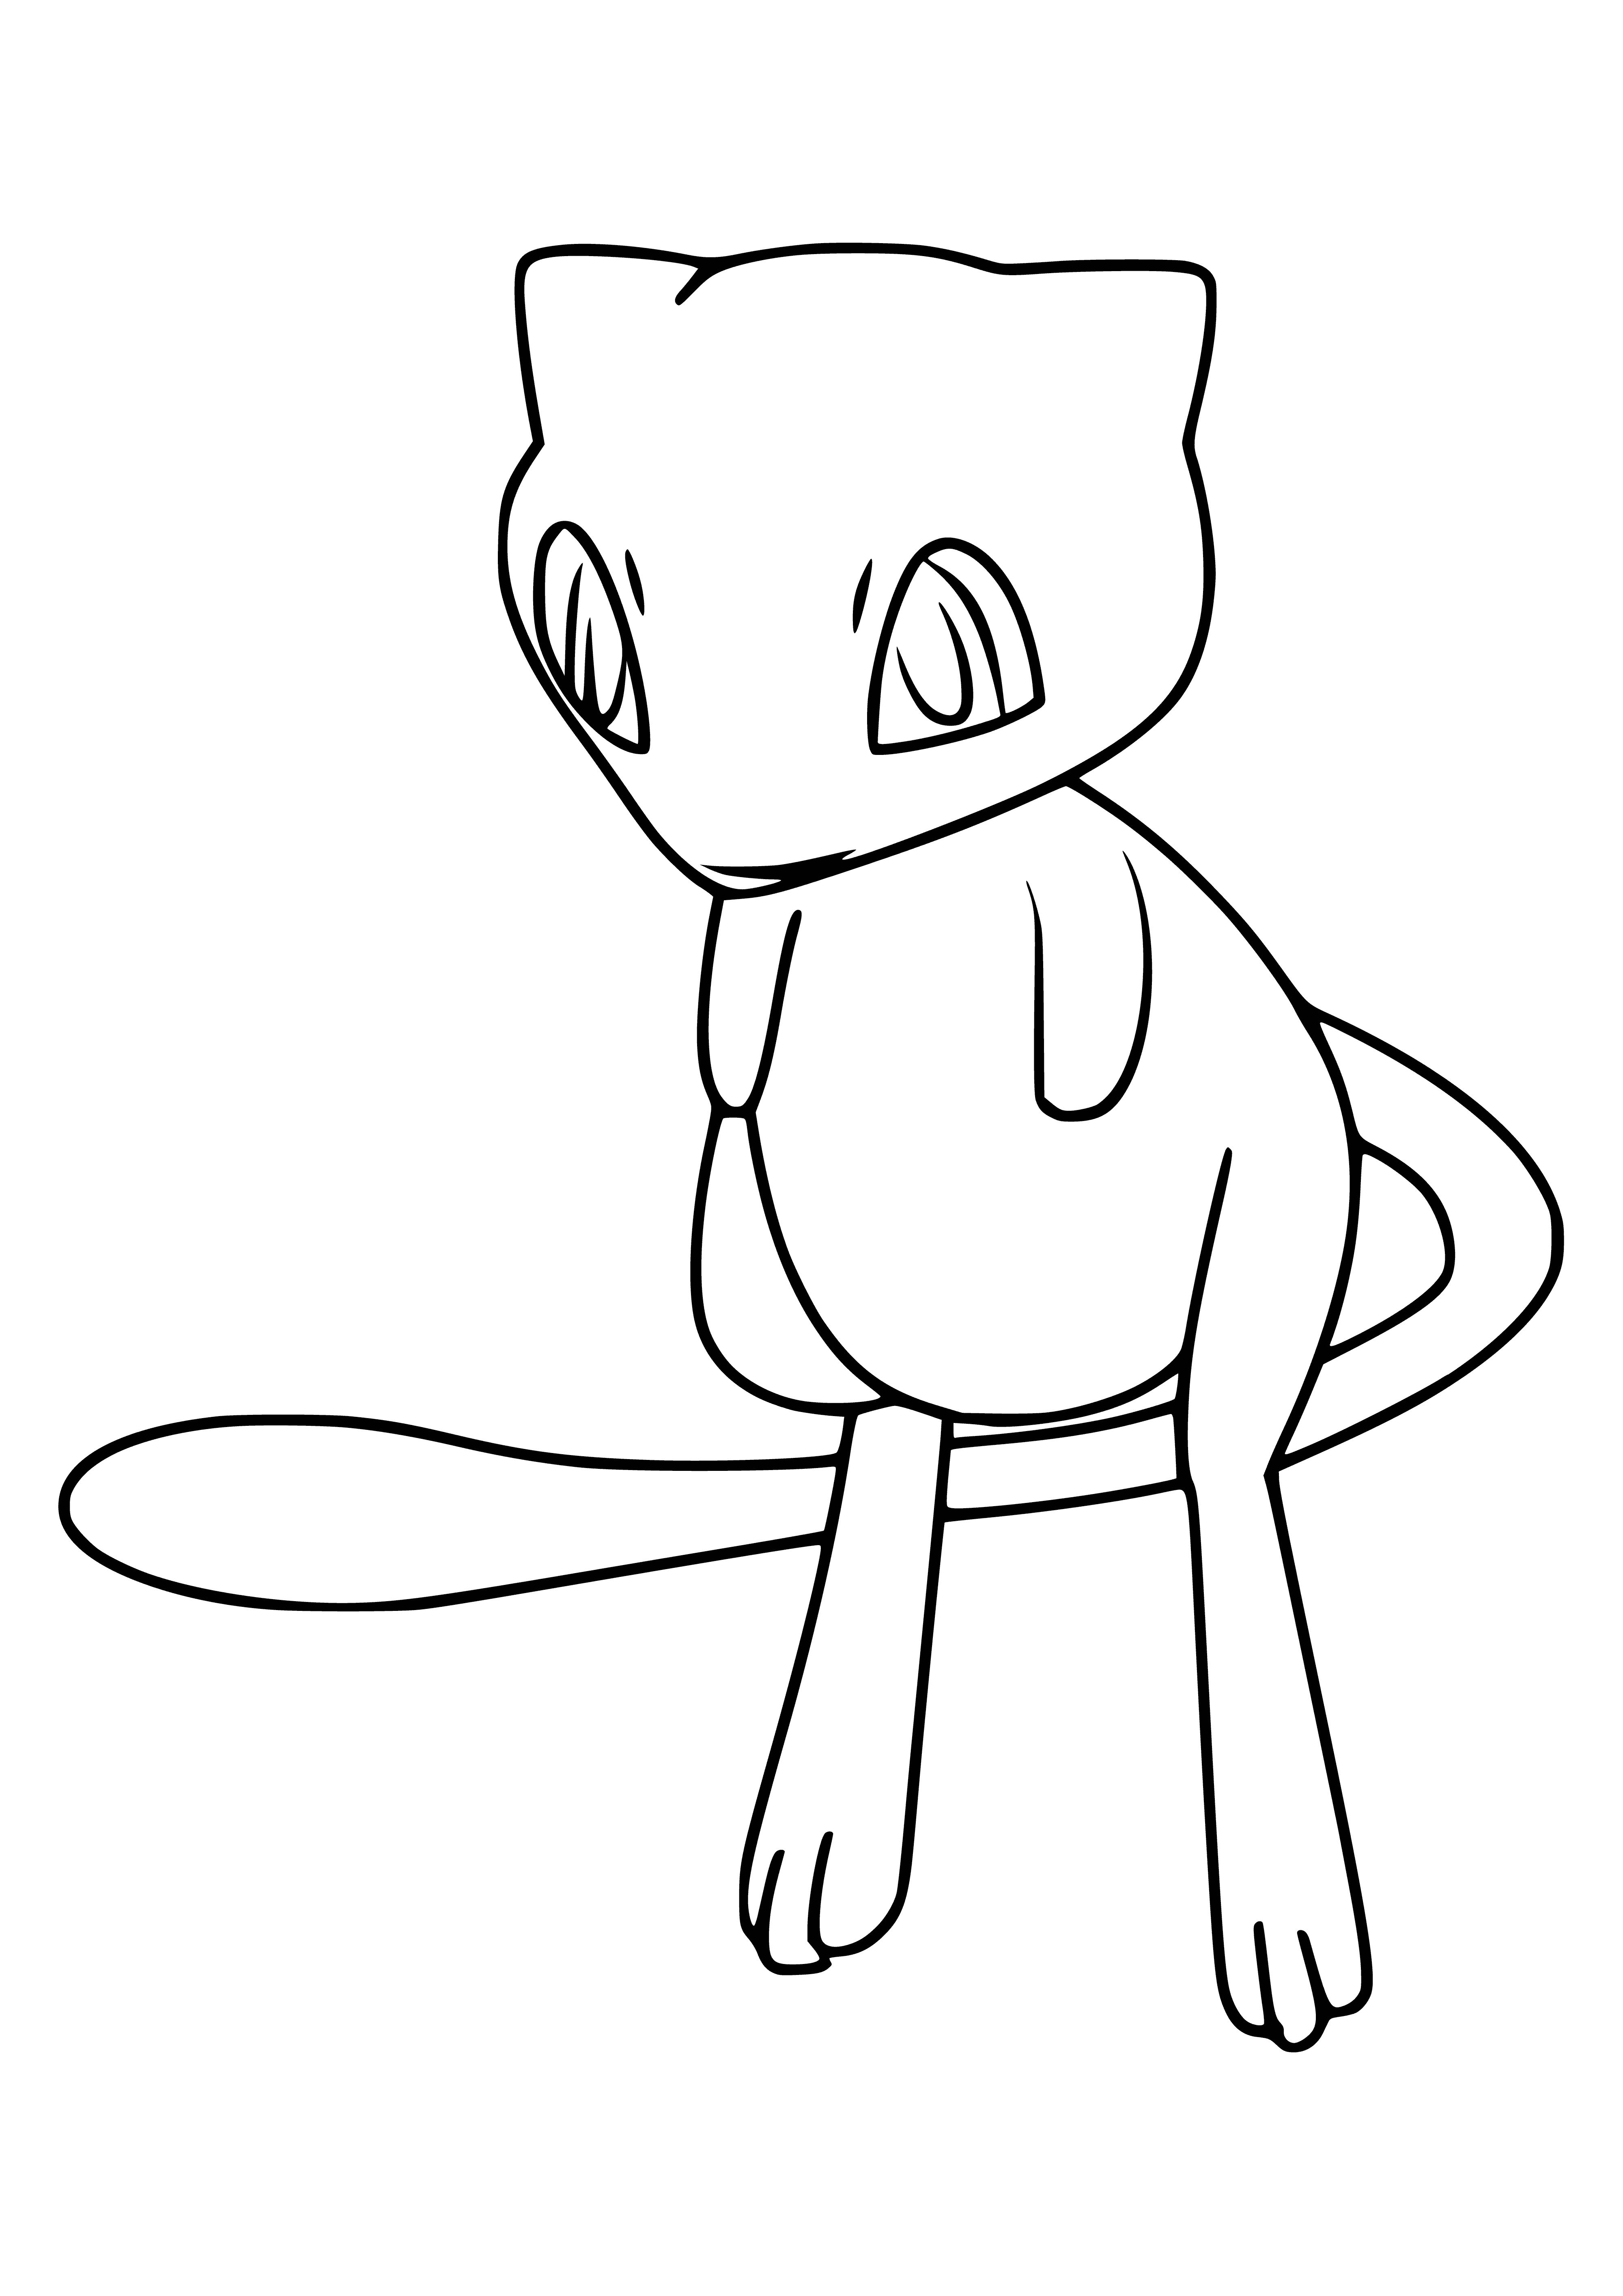 Pokémon légendaire Mew coloriage